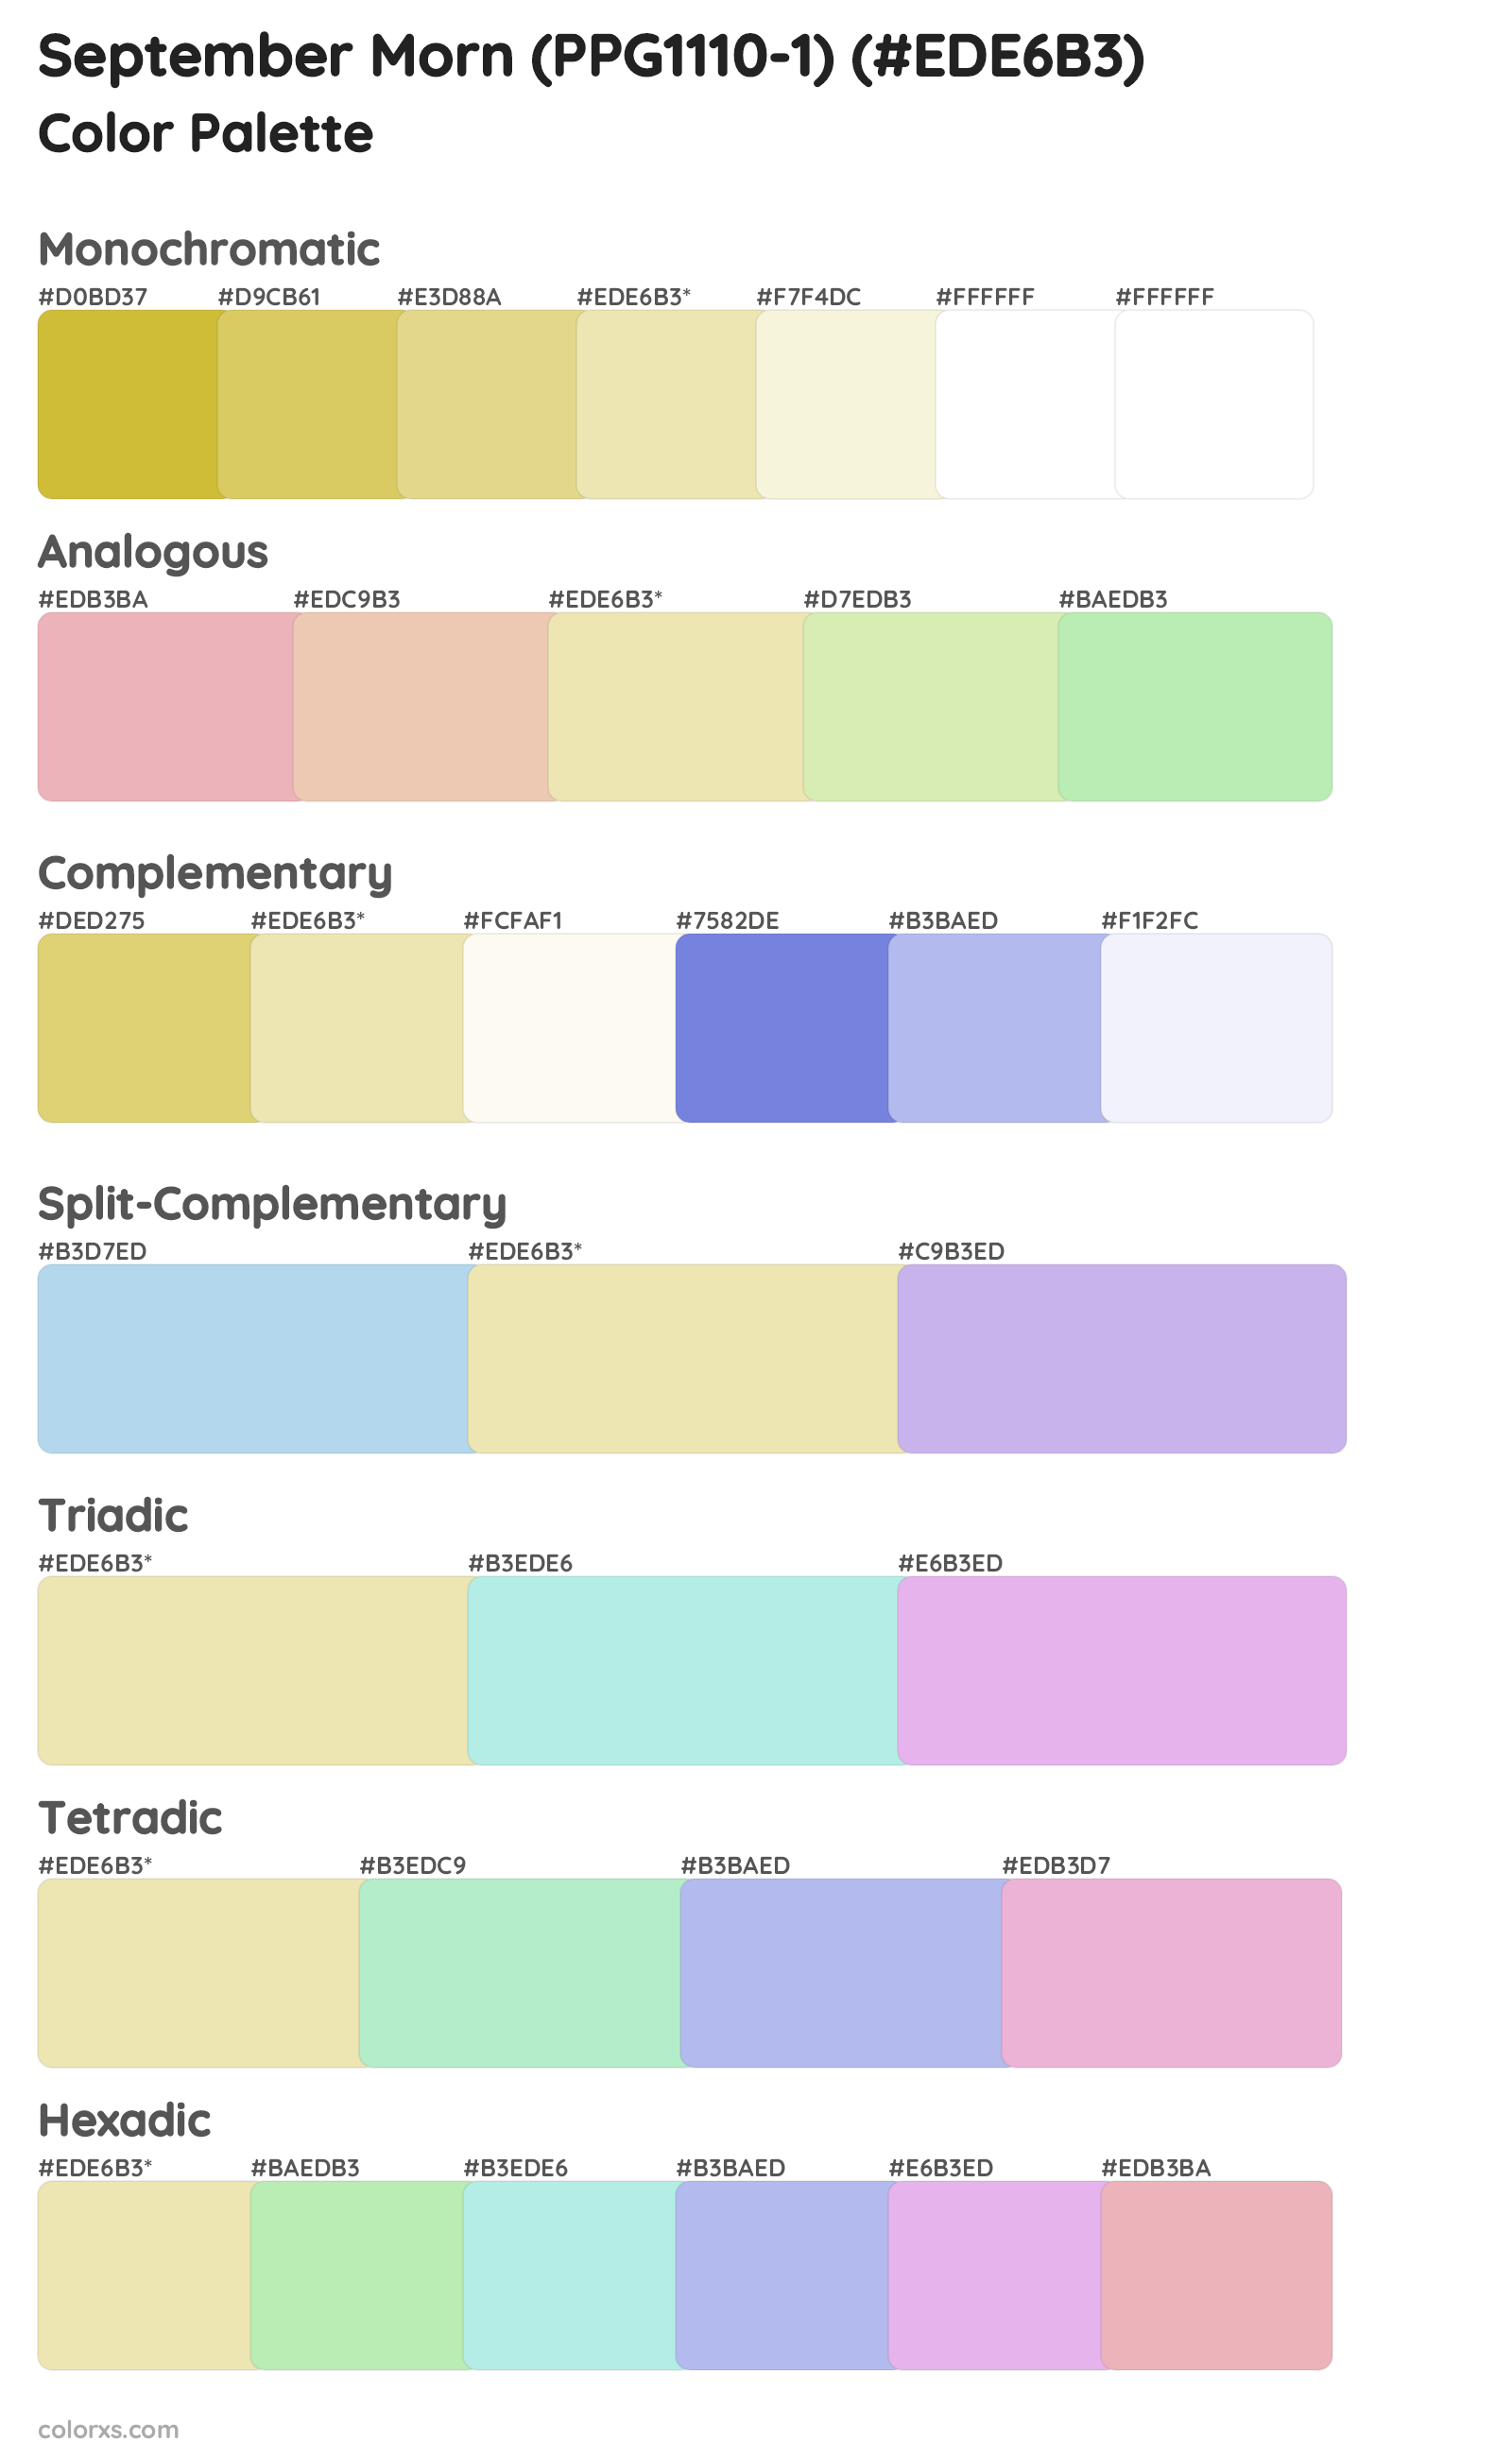 September Morn (PPG1110-1) Color Scheme Palettes